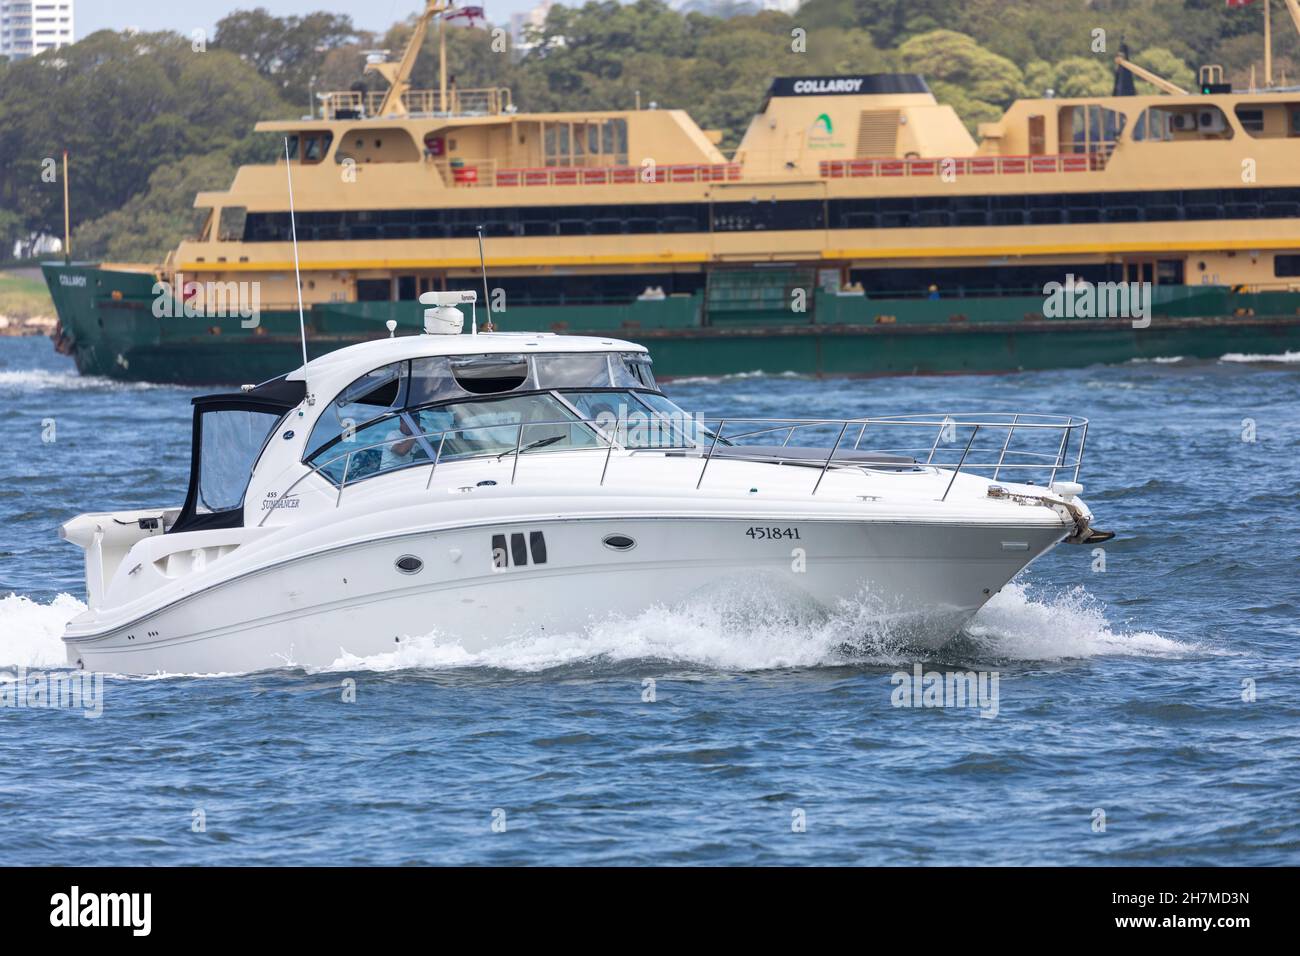 Sydney Ferry MV Collaroy uno dei traghetti di classe d'acqua dolce passa una barca a motore Sea Ray sundancer sul porto di Sydney, NSW, Australia Foto Stock